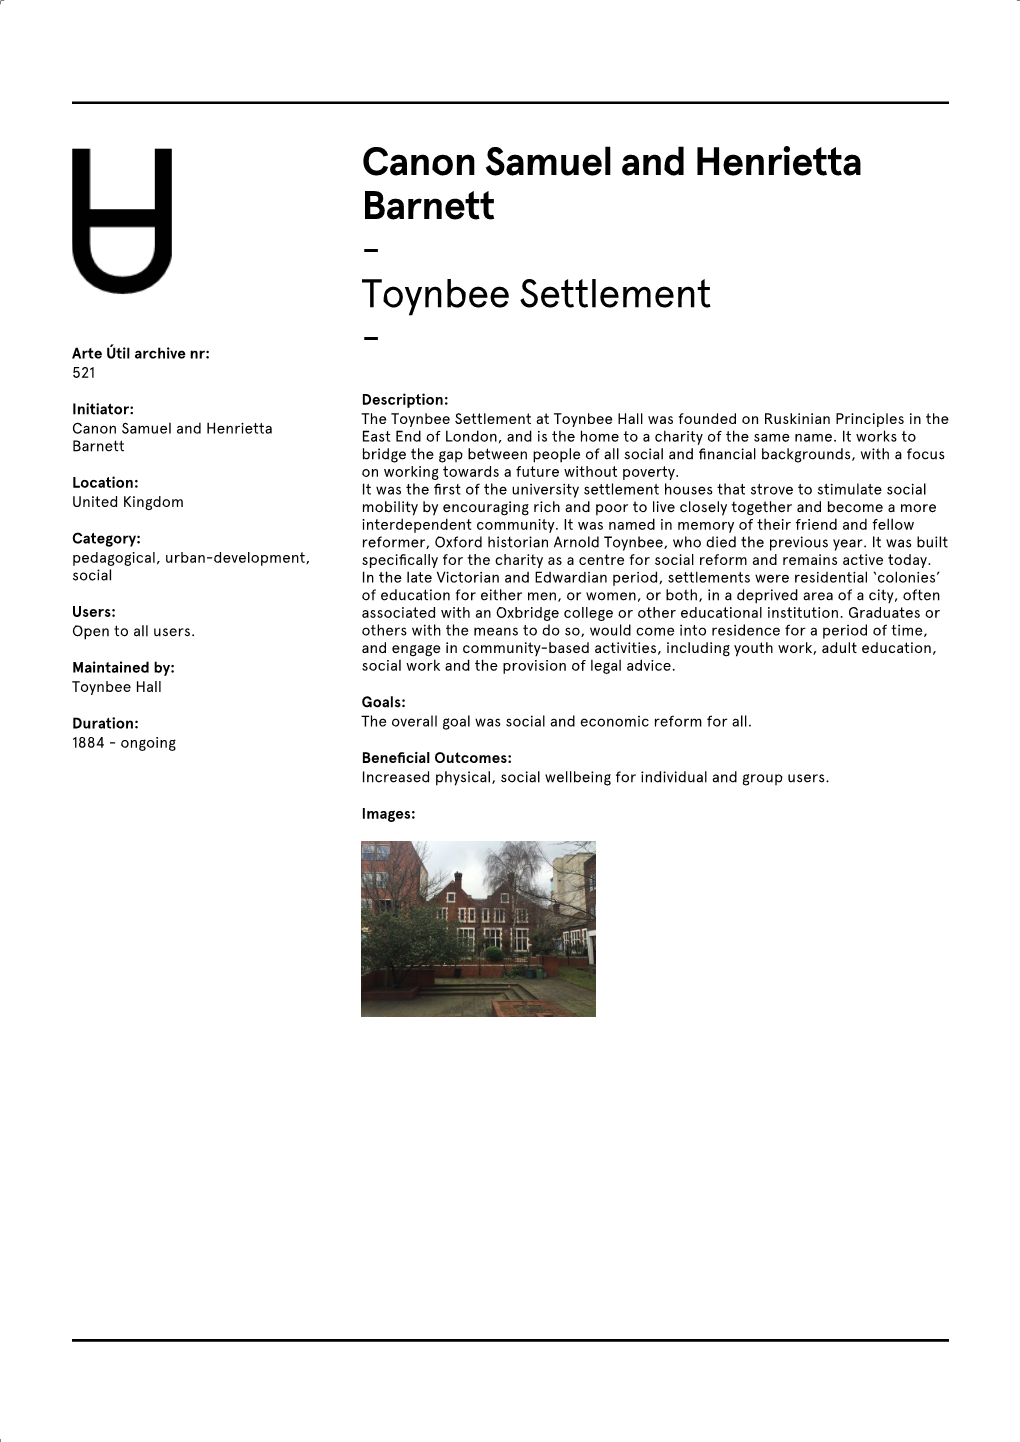 Arte Útil Toynbee Settlement